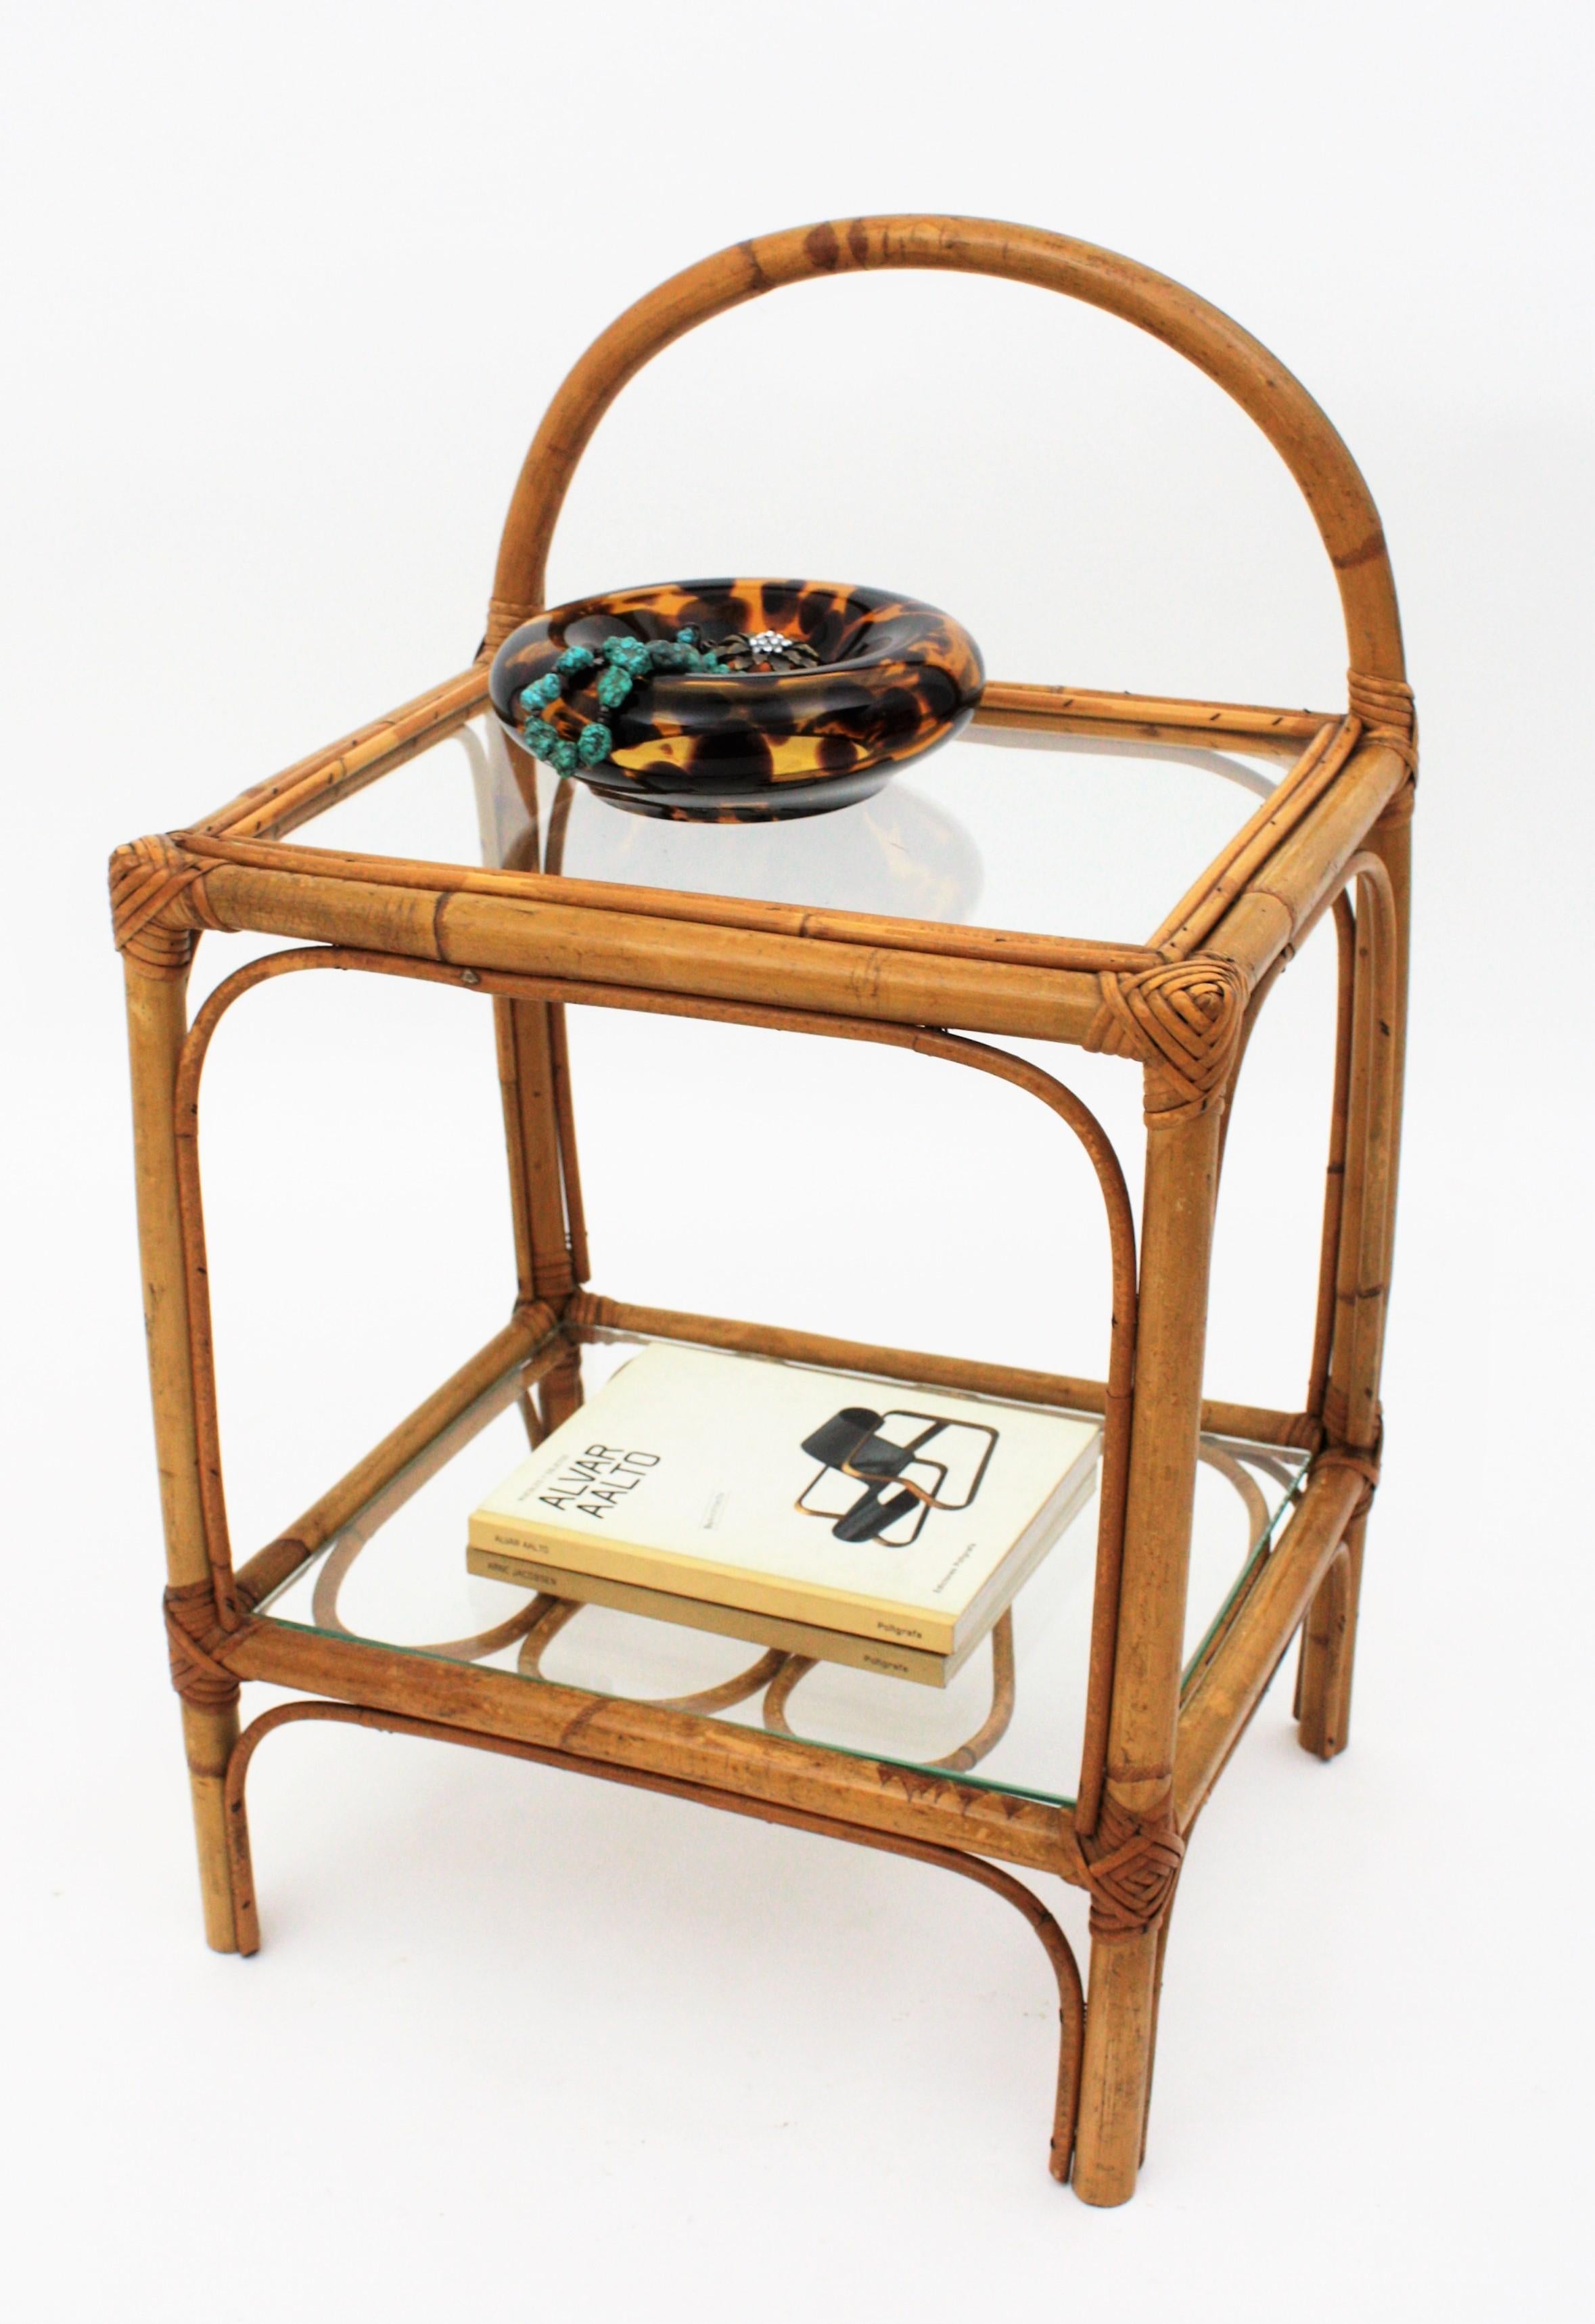 Handgefertigter Tisch aus Bambus und Rattan, Mid-Century Modern, mit rattanverzierter Ablage und Glasplatte, Spanien, 1950er Jahre.
Verwenden Sie ihn als Nachttisch, Beistelltisch oder Endtisch.
Wunderschön für den Innenbereich in einer